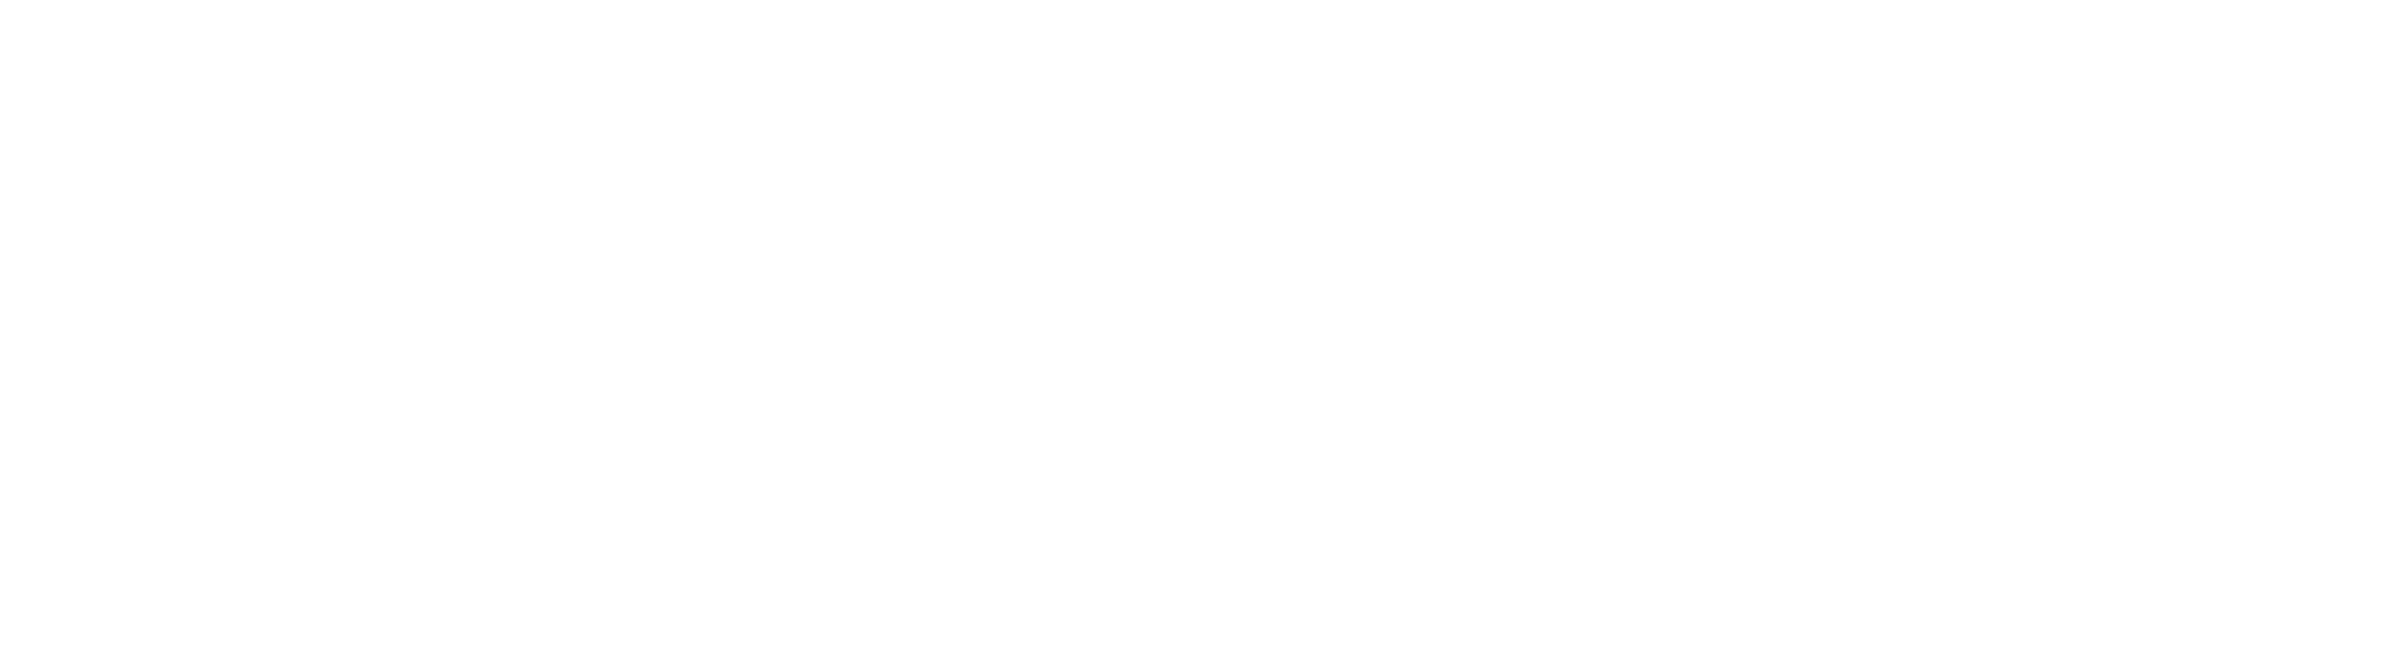 SHABBIES AMSTERDAM Logo